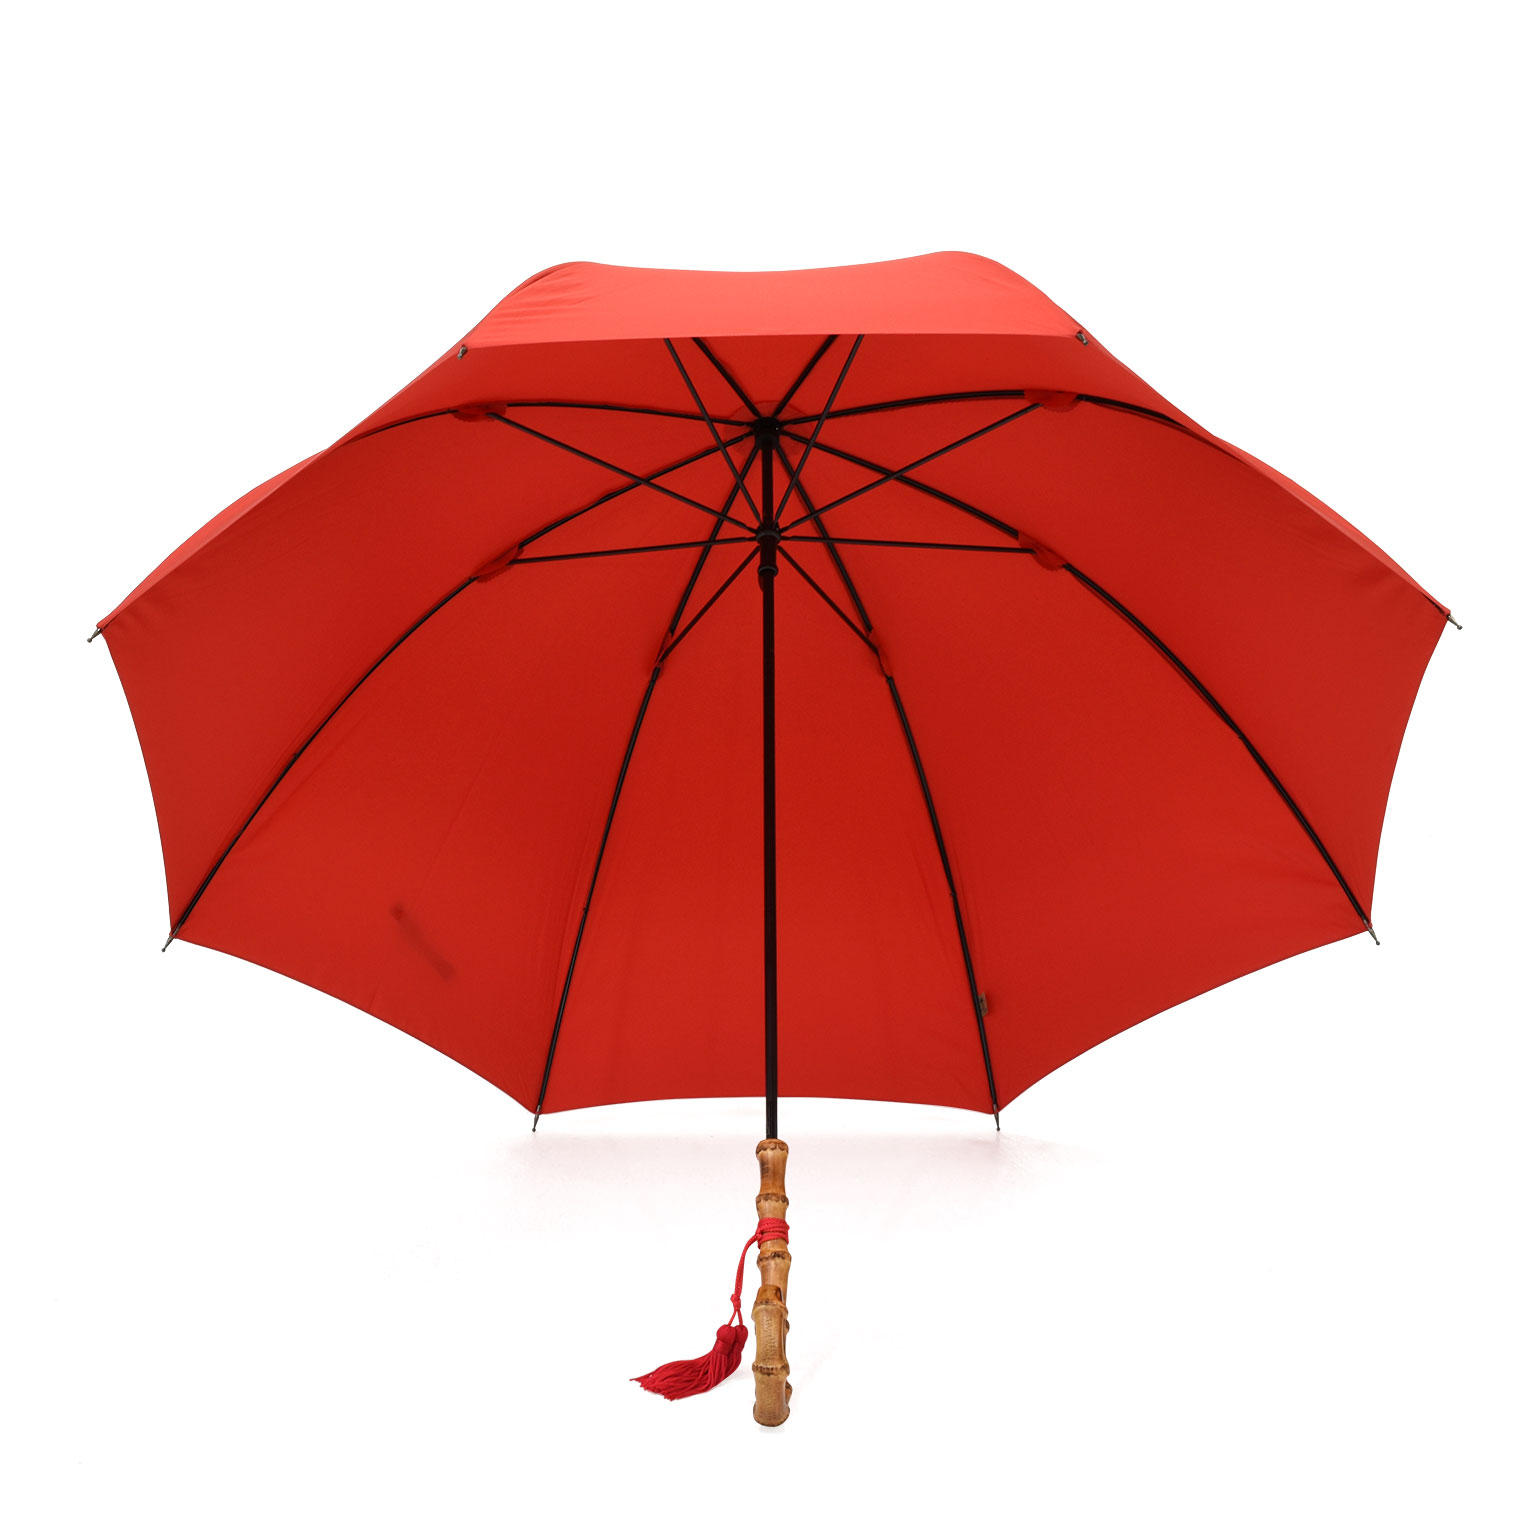 ドーム型バンブー長傘